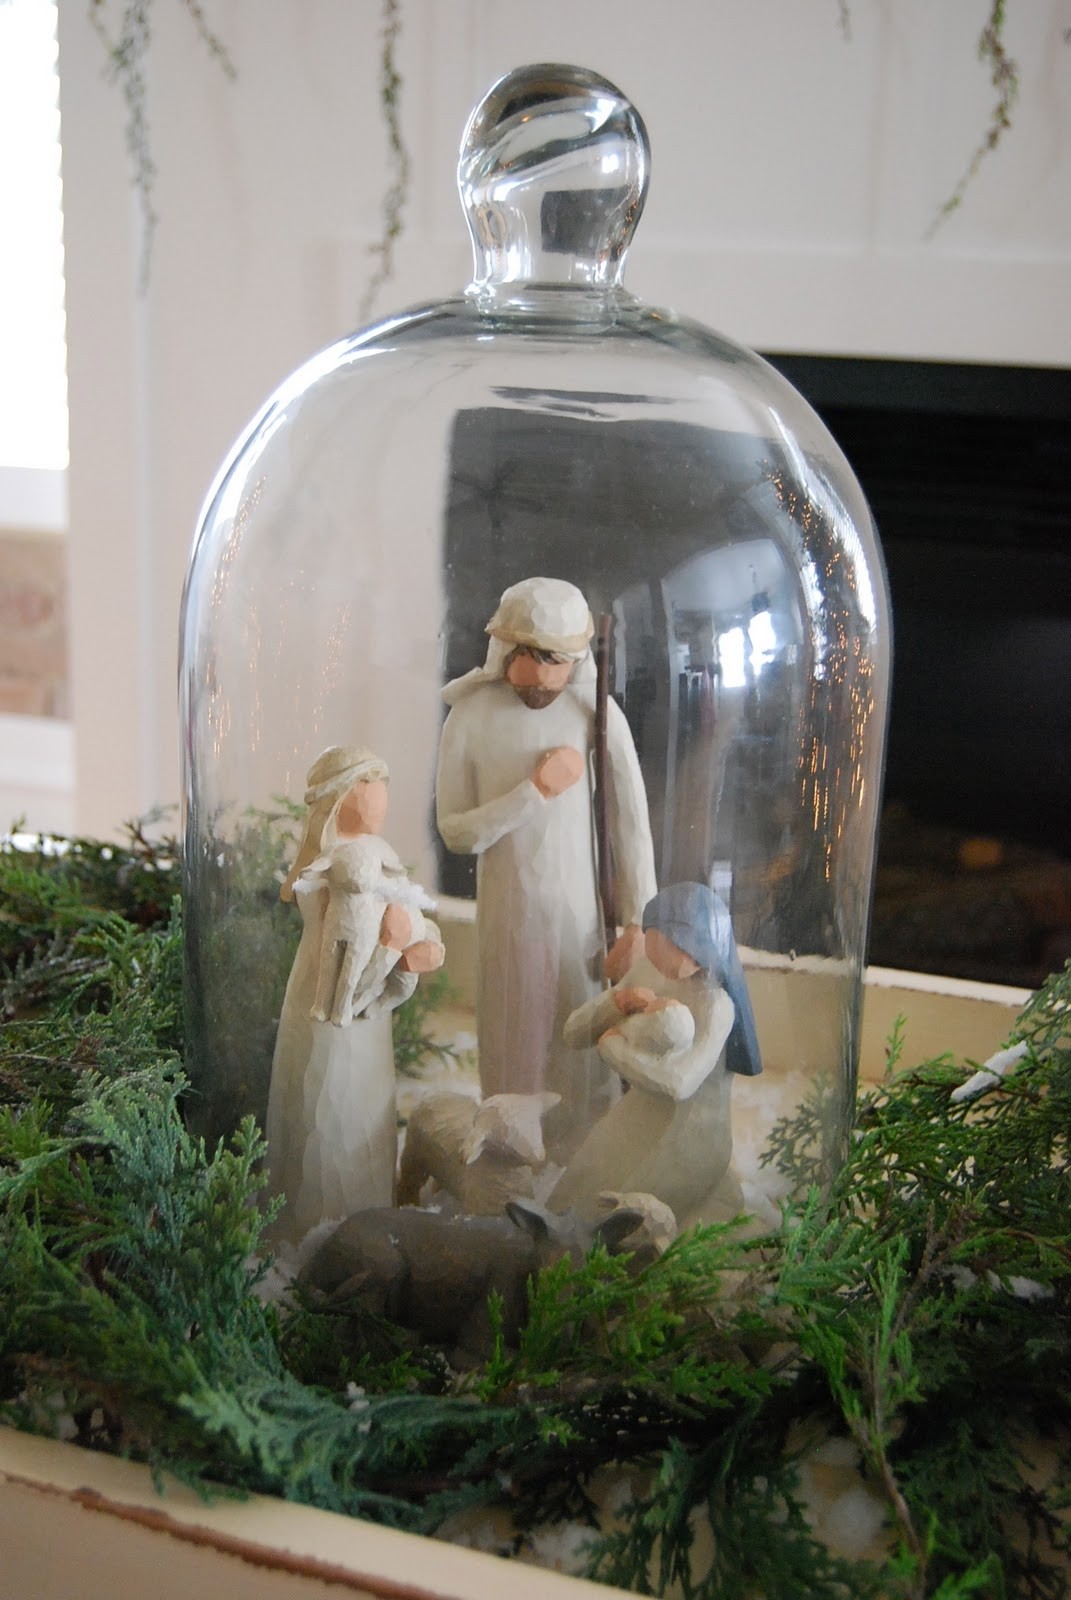 Clay nativity sets